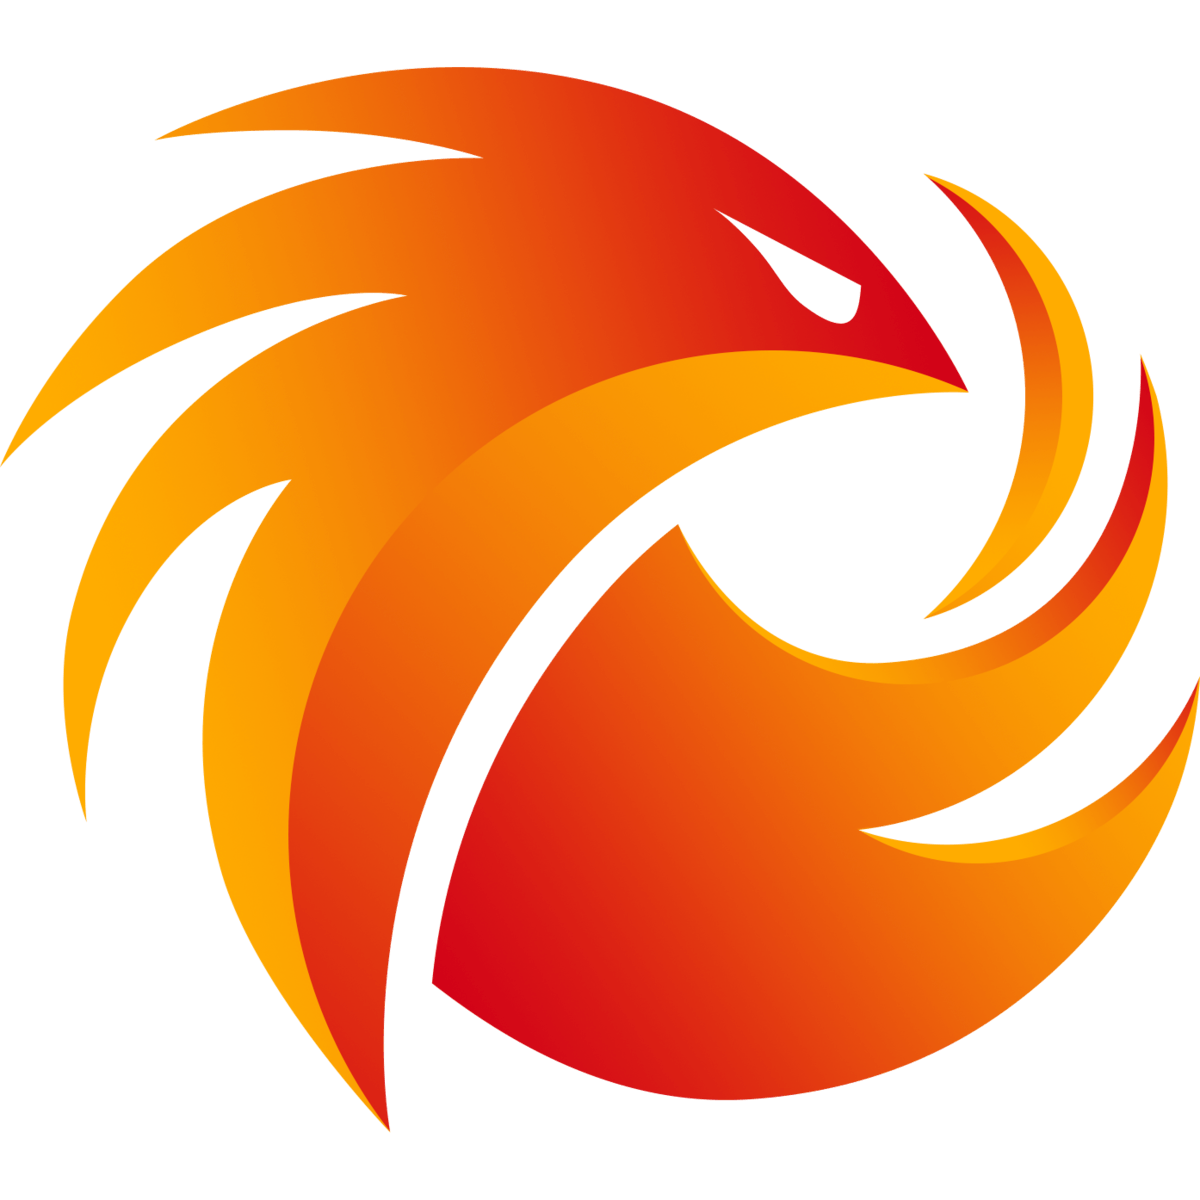 PHOENIX1 Logo - Phoenix1 - Leaguepedia | League of Legends Esports Wiki